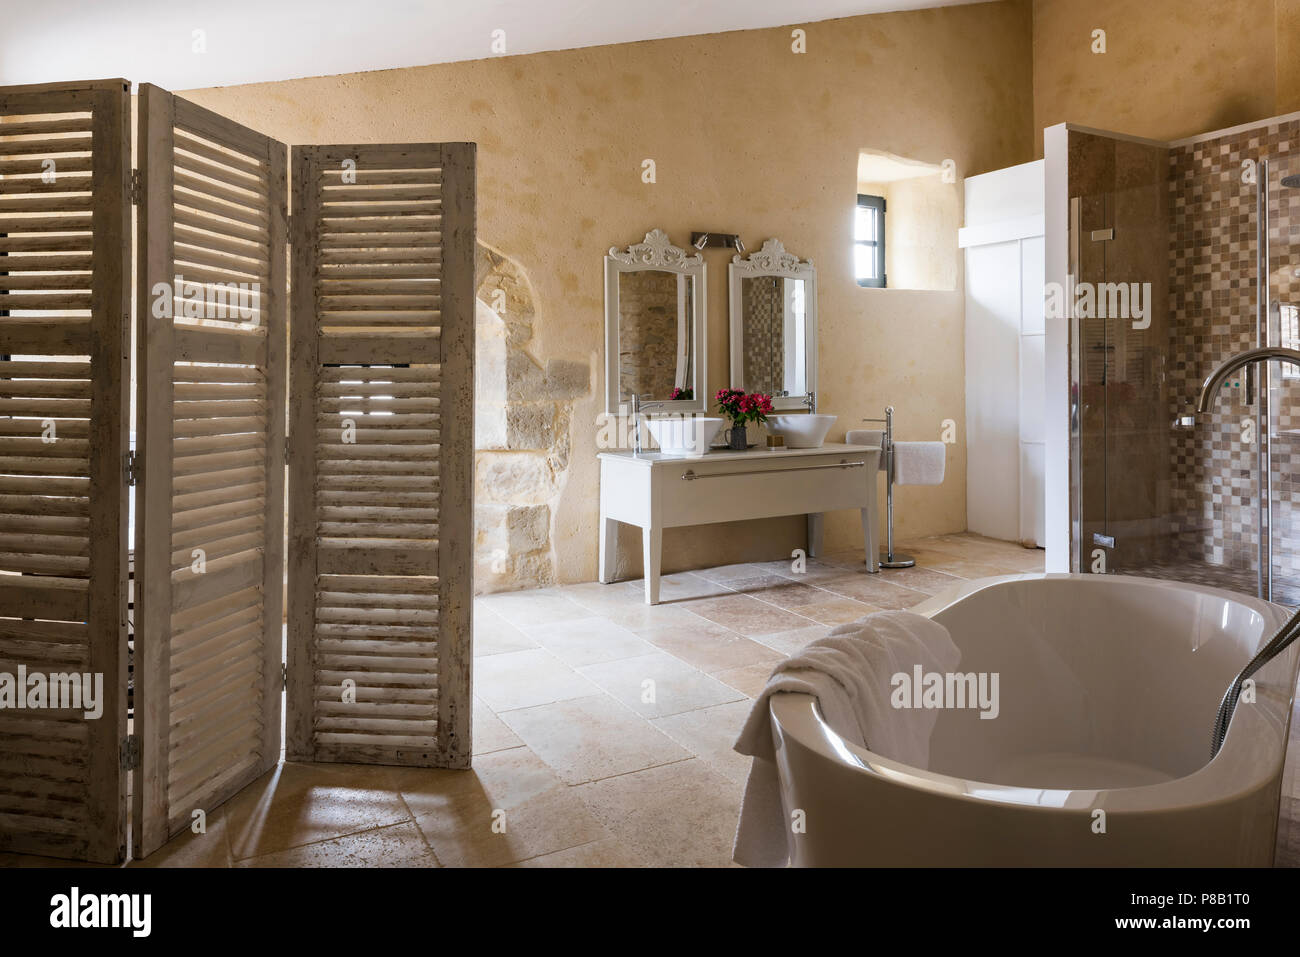 Volet peint sur écran dans une salle de bains privative avec baignoire sur pieds Banque D'Images